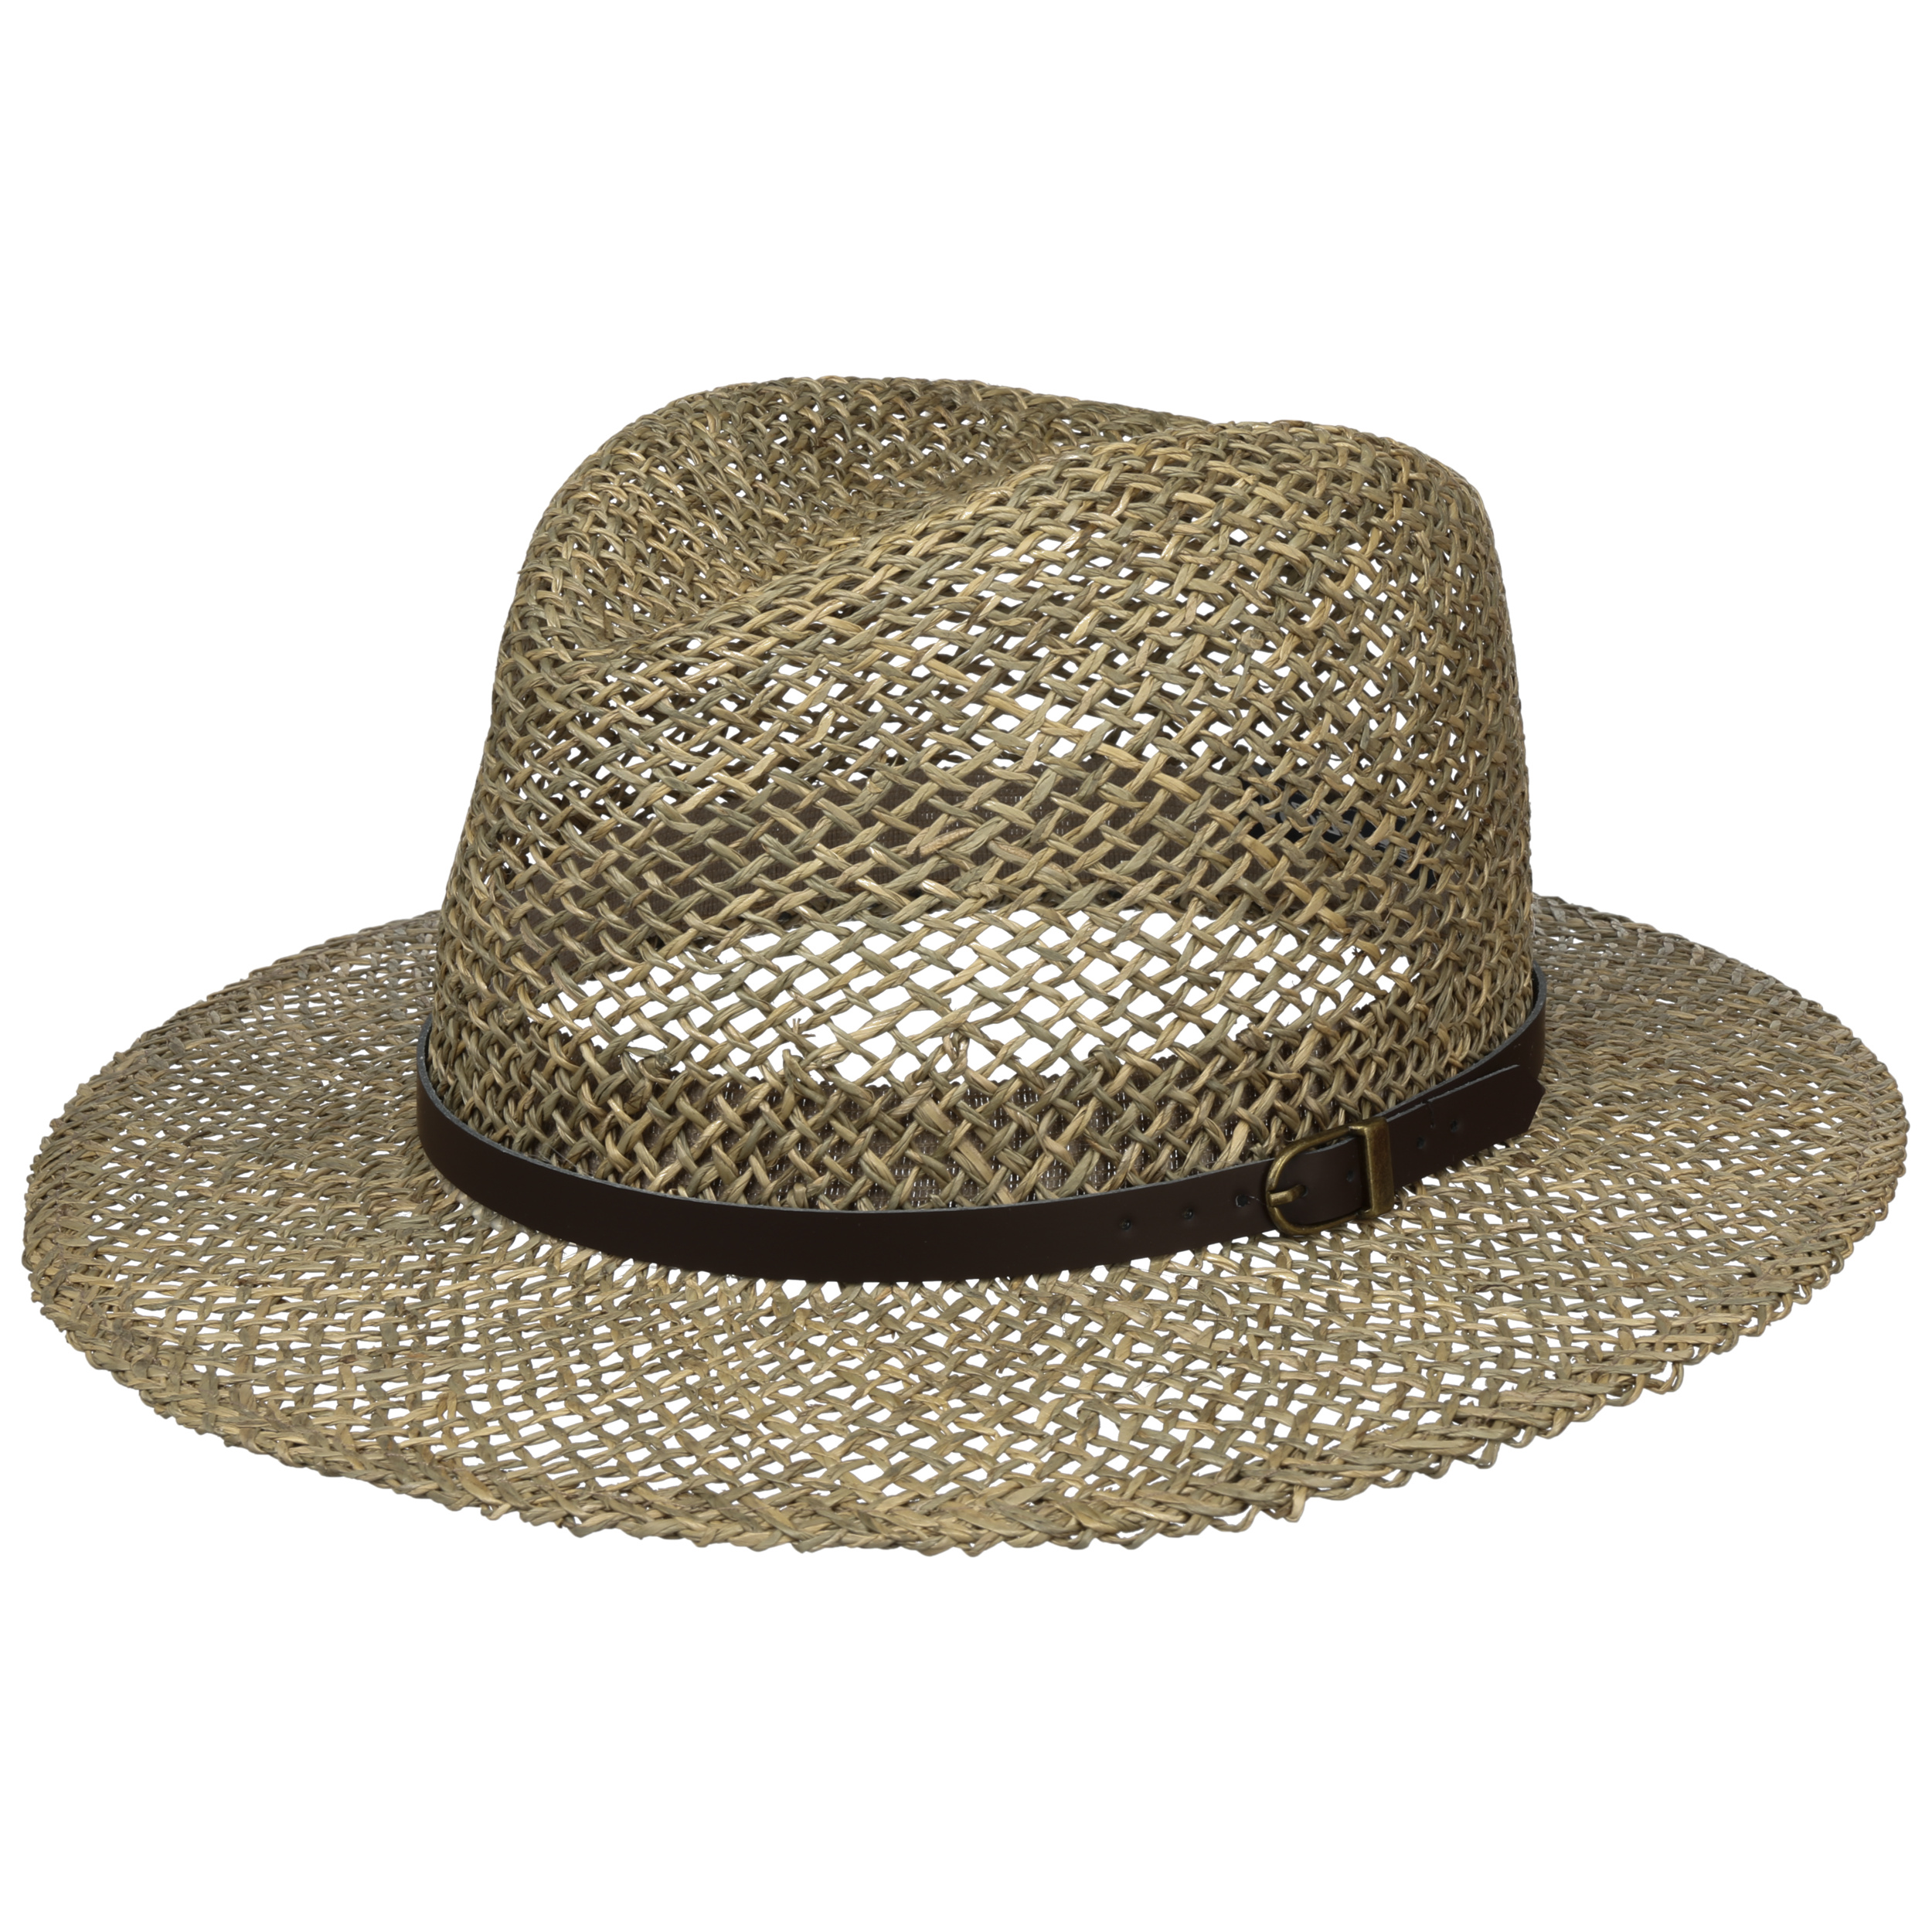 Lipodo Cappello di Paglia Janston Twotone Uomo Made in Italy Estivo Traveller da Sole Primavera/Estate 